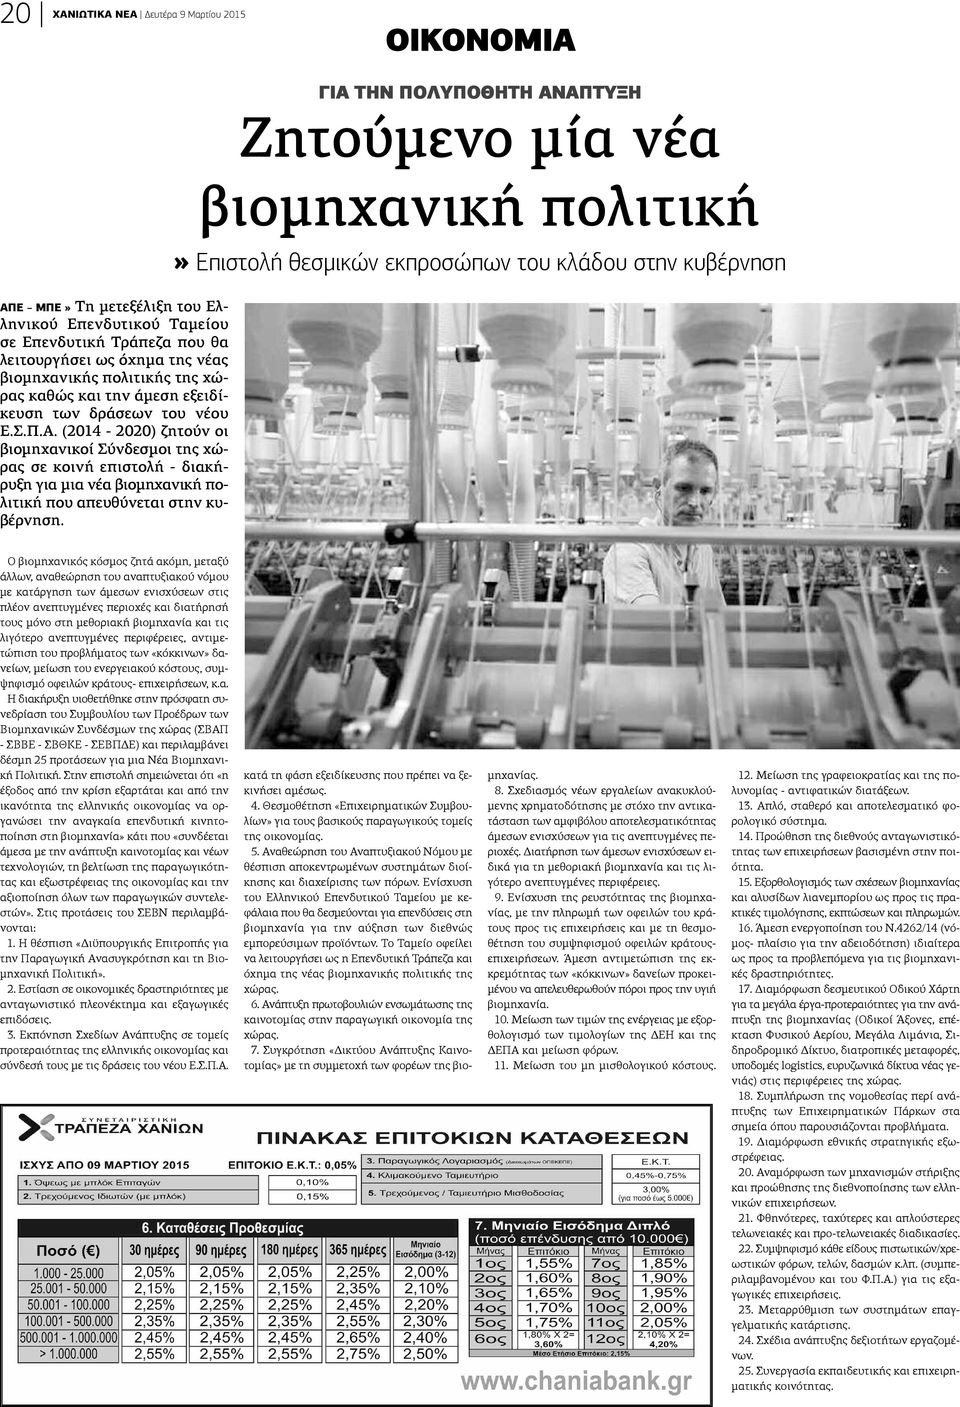 (2014-2020) ζητούν οι βιομηχανικοί Σύνδεσμοι της χώρας σε κοινή επιστολή - διακήρυξη για μια νέα βιομηχανική πολιτική που απευθύνεται στην κυβέρνηση.